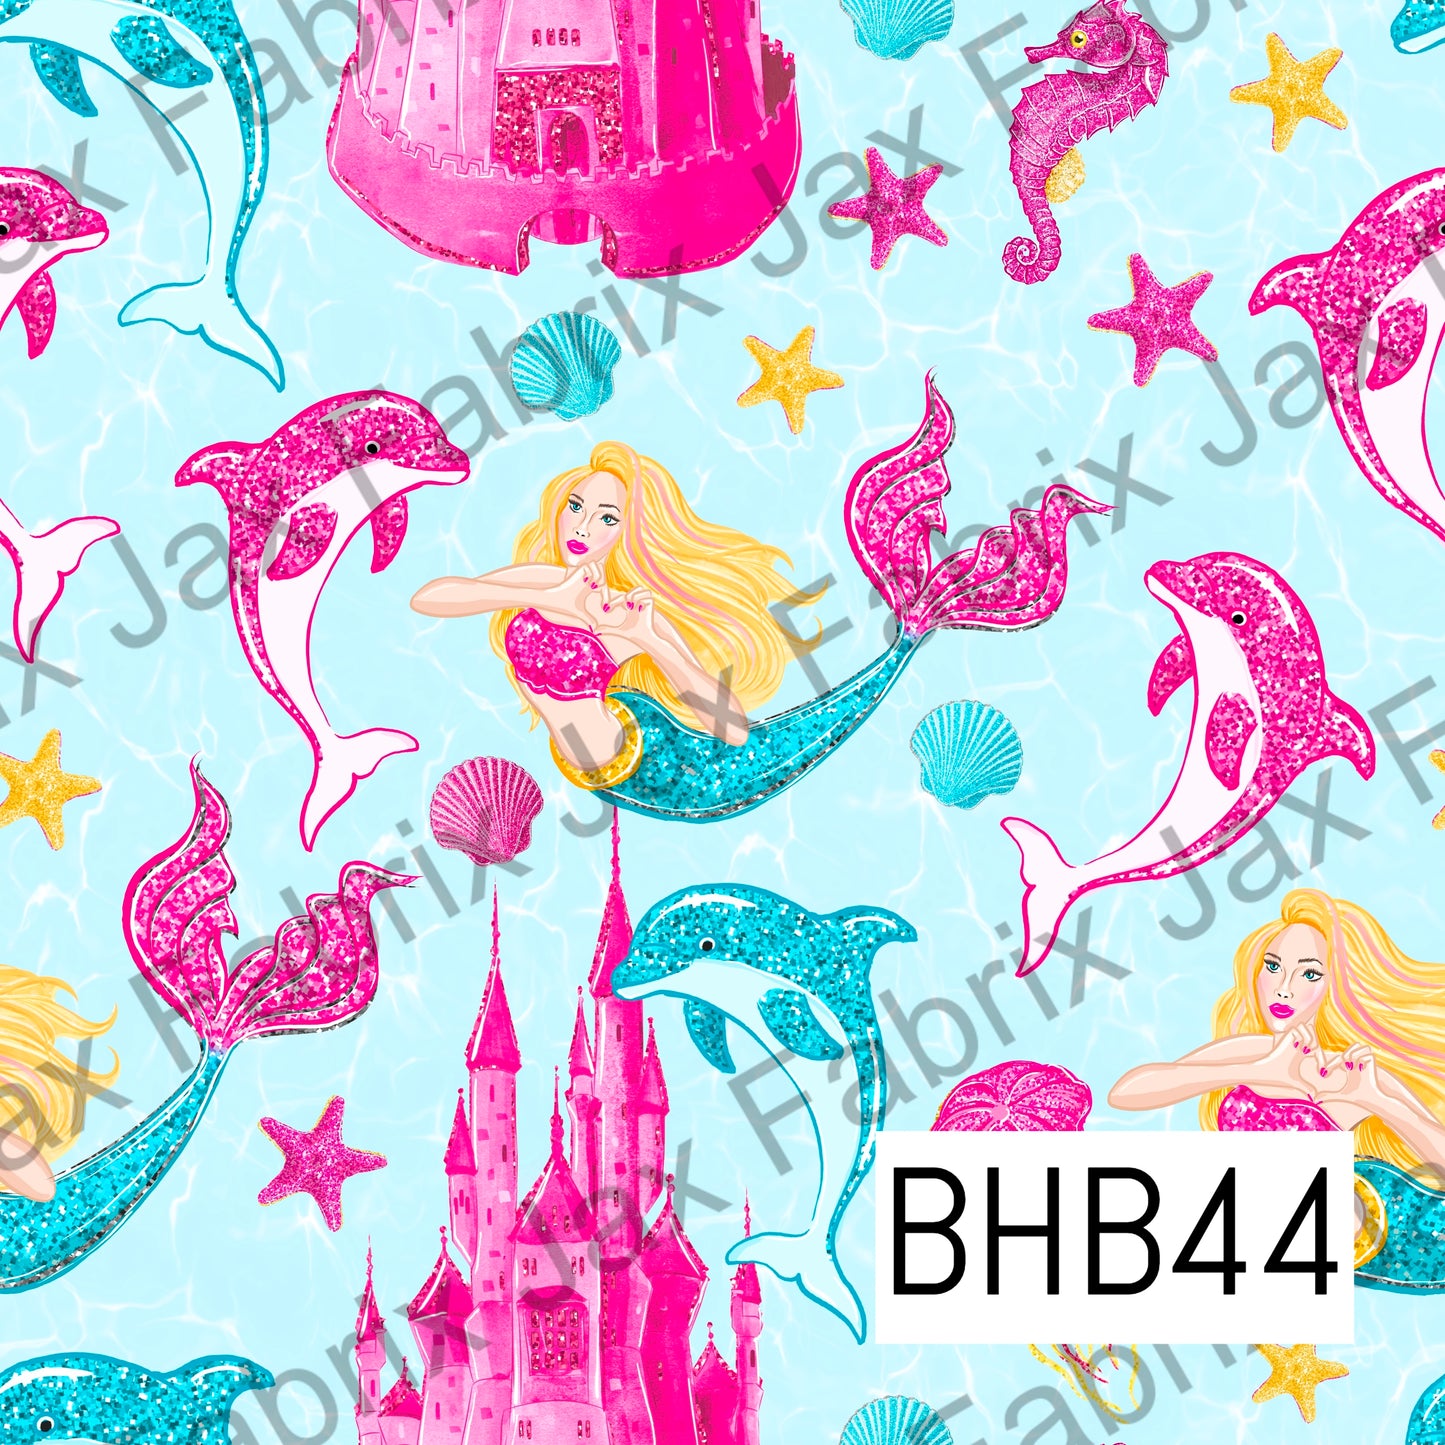 Mermaid BHB44